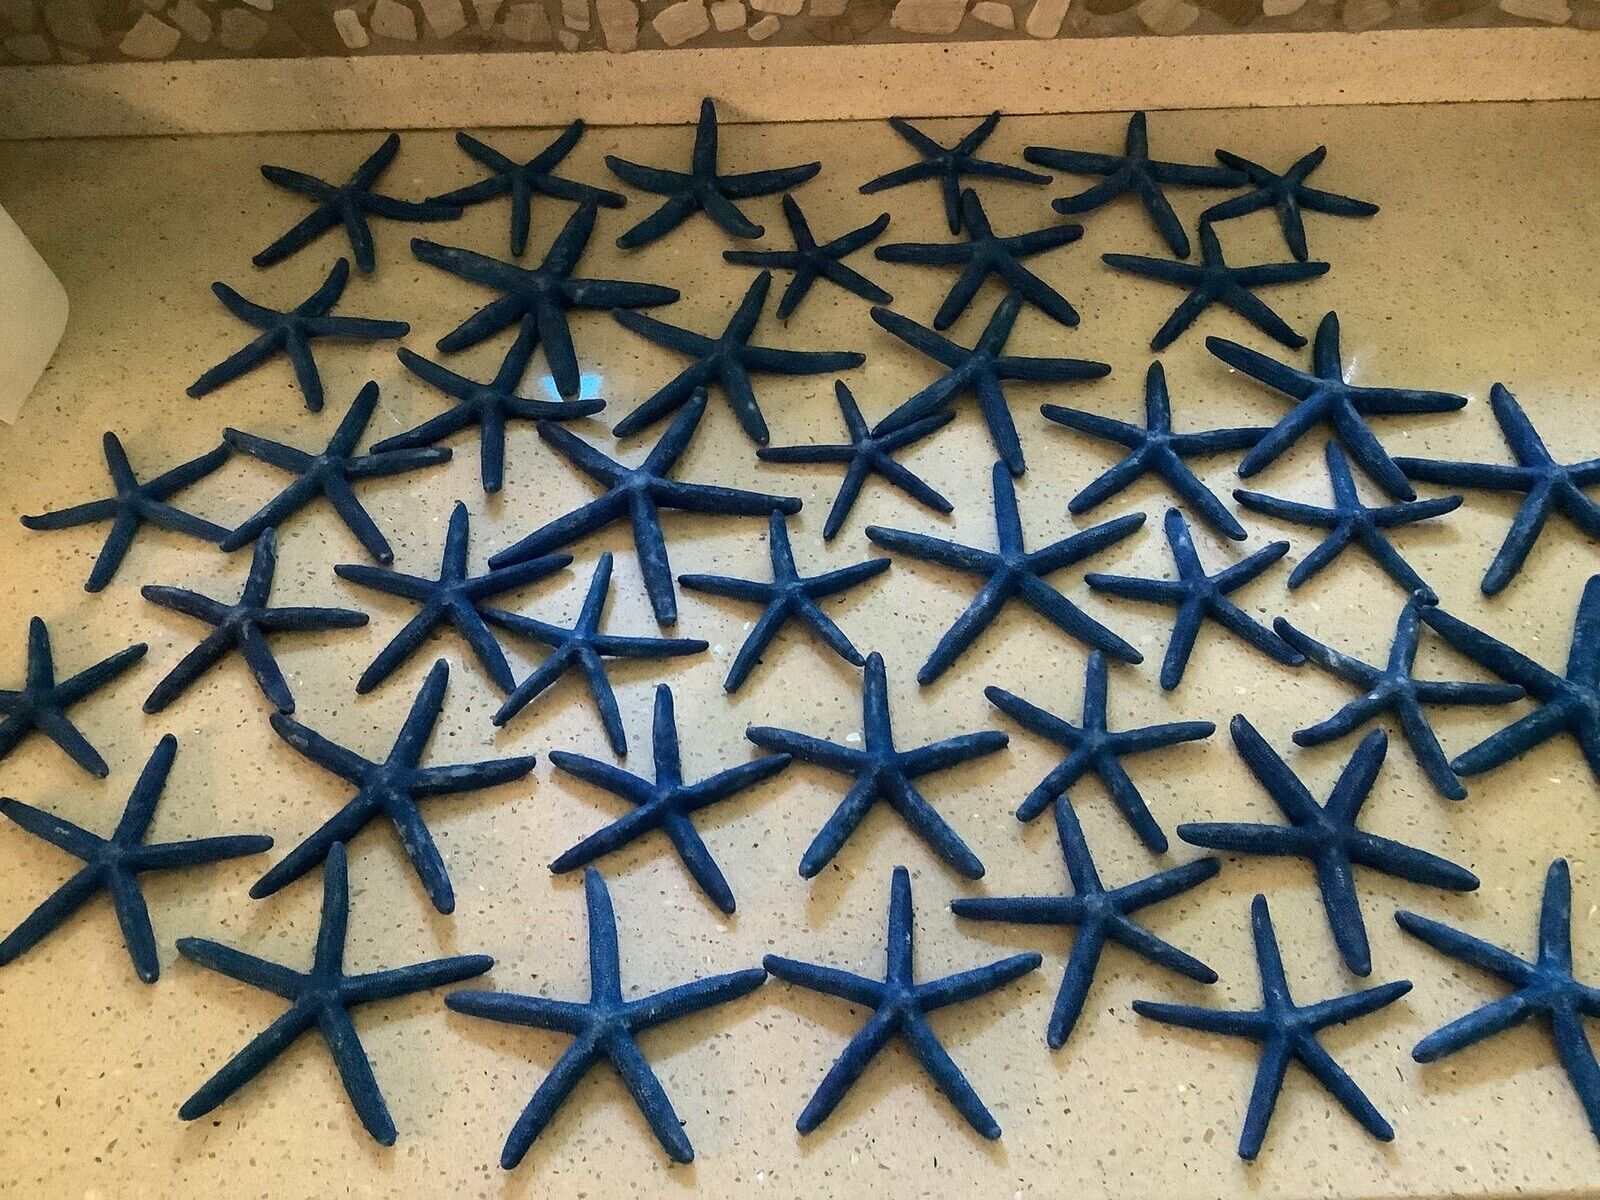 Large Set (44) Of Blue Dyed Finger Starfish, Royal Blue, Nautical Decor